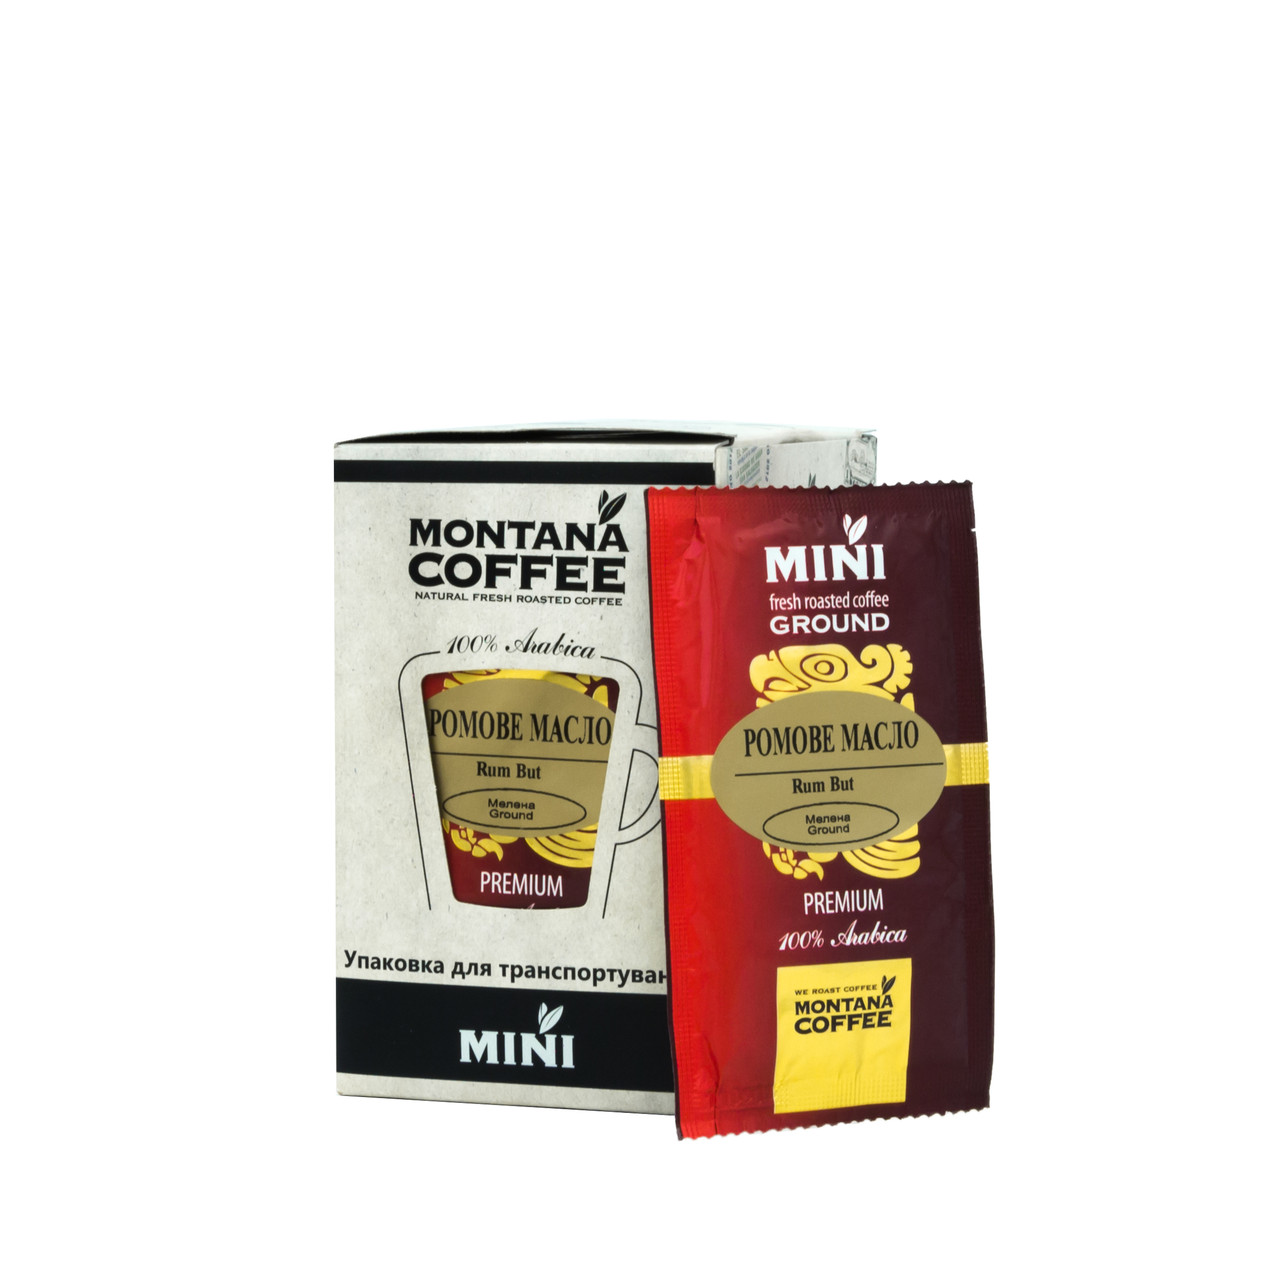 Ромове масло Montana coffee MINI 20 шт